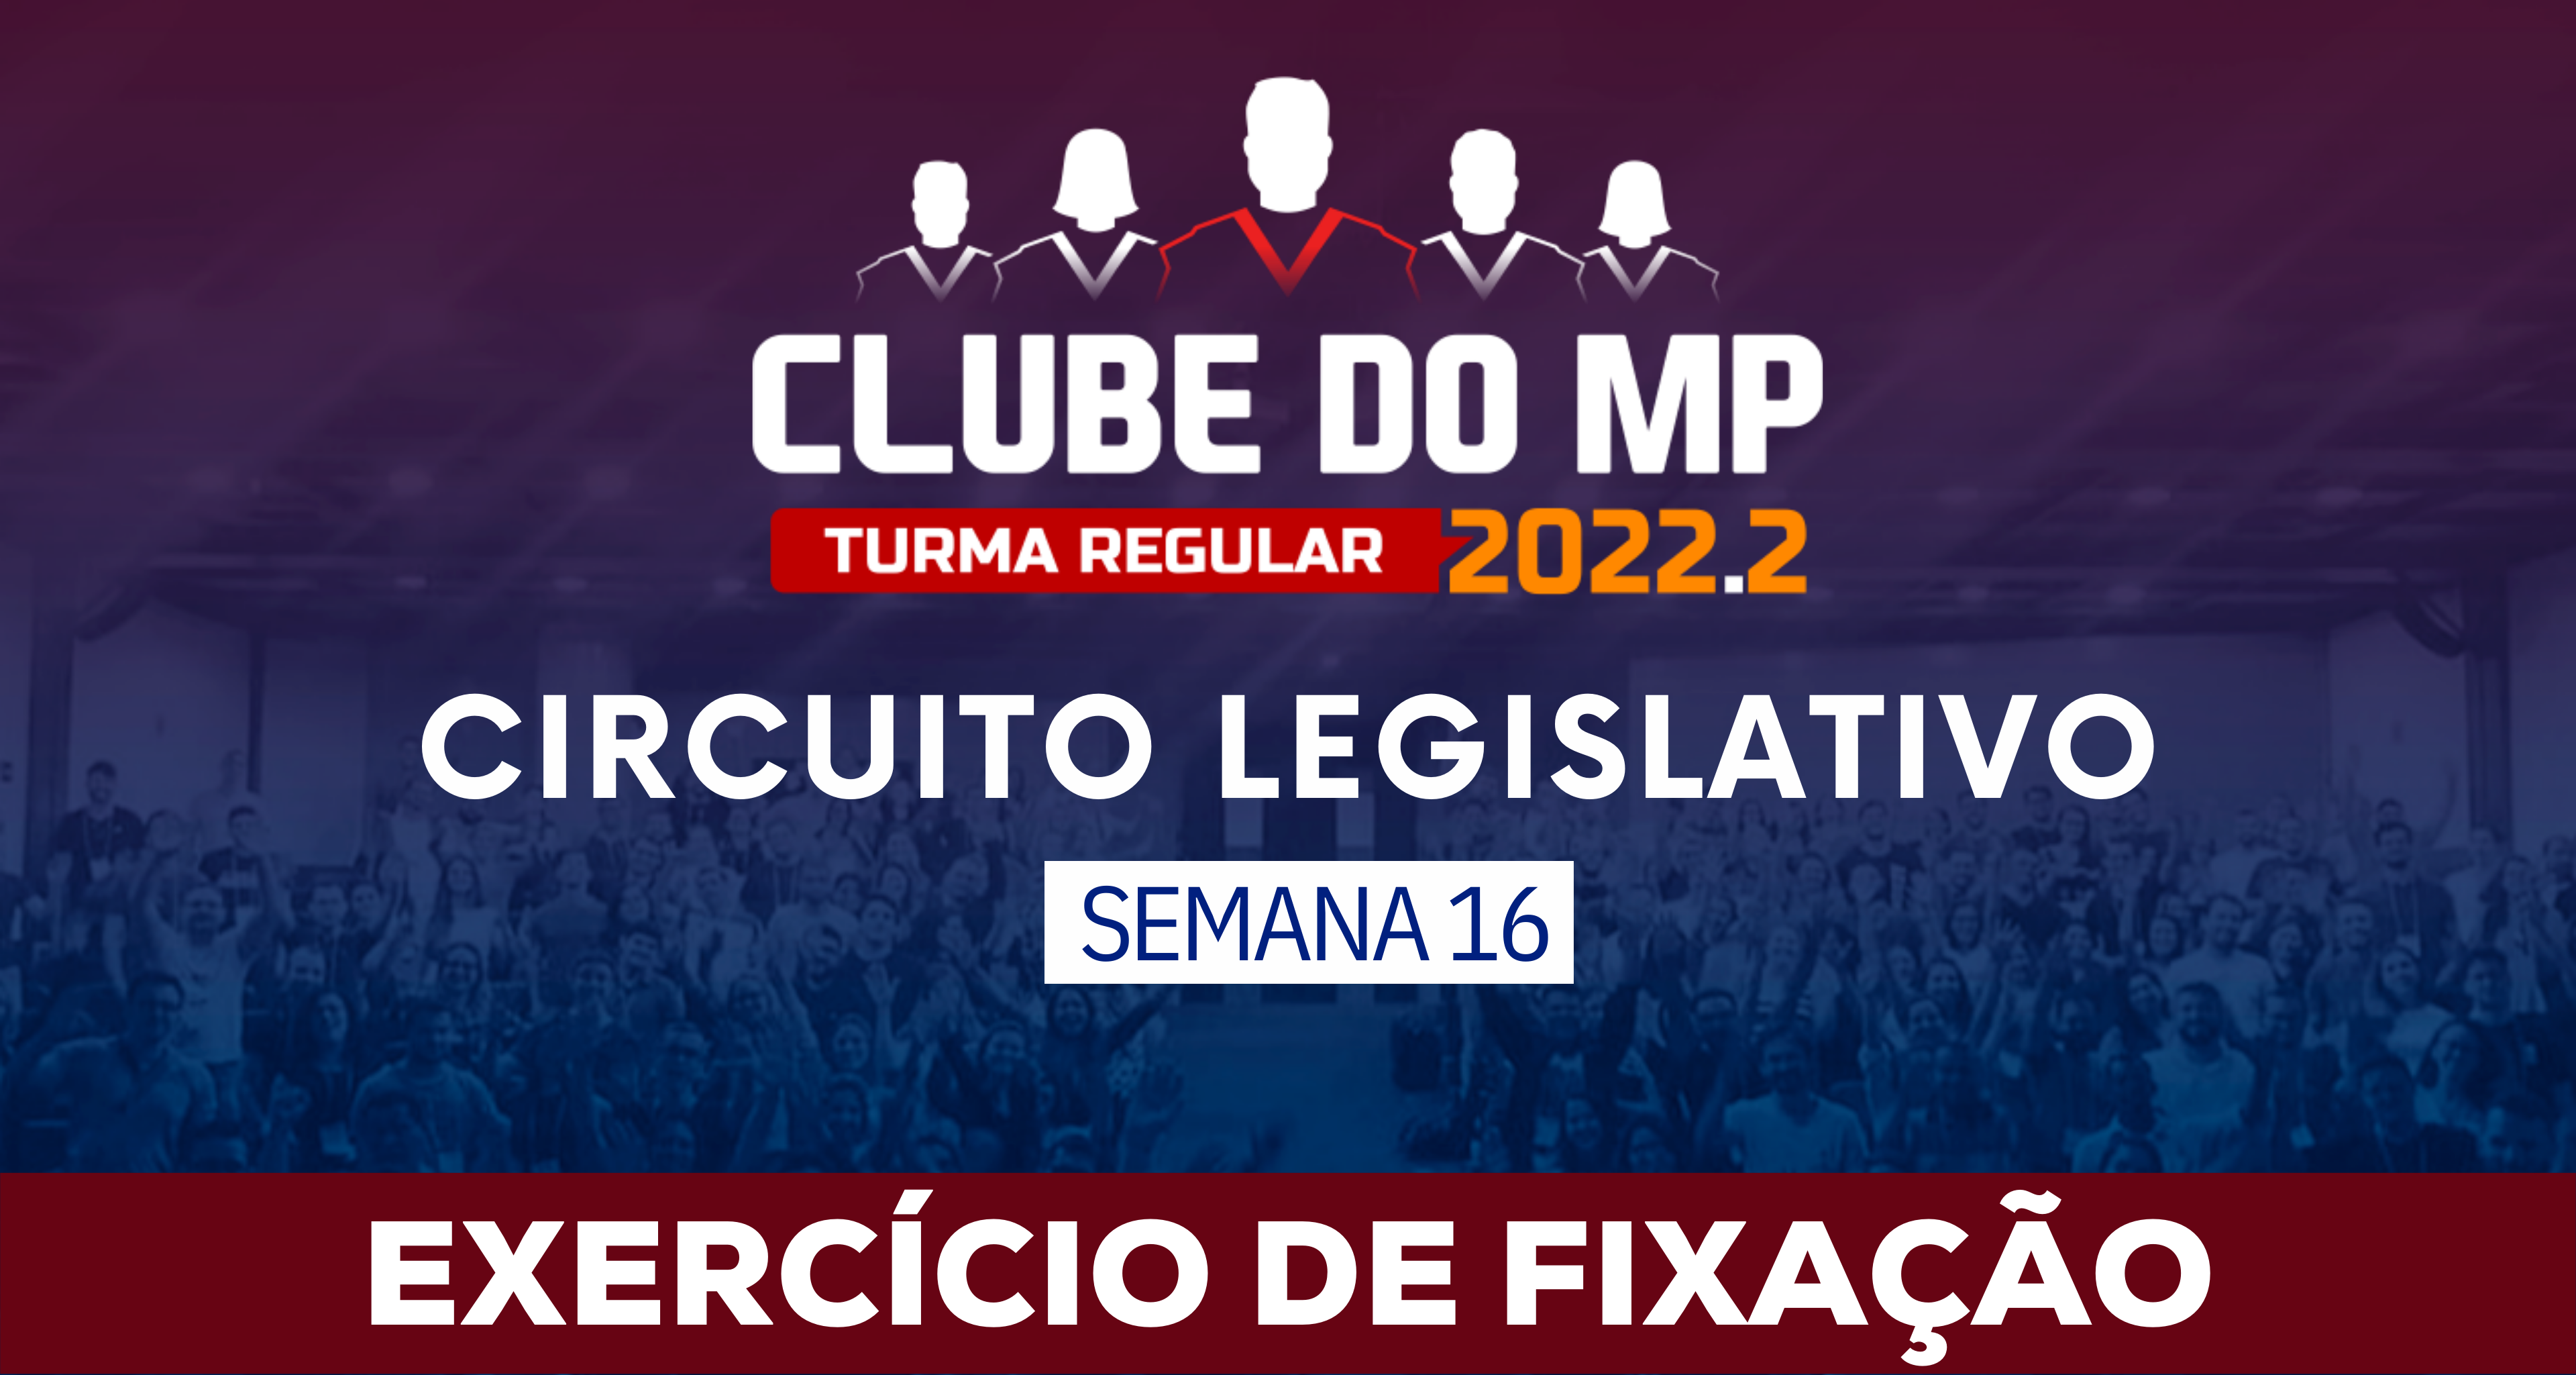 Circuito Legislativo 2022.2 (Clube do MP - Semana 16)